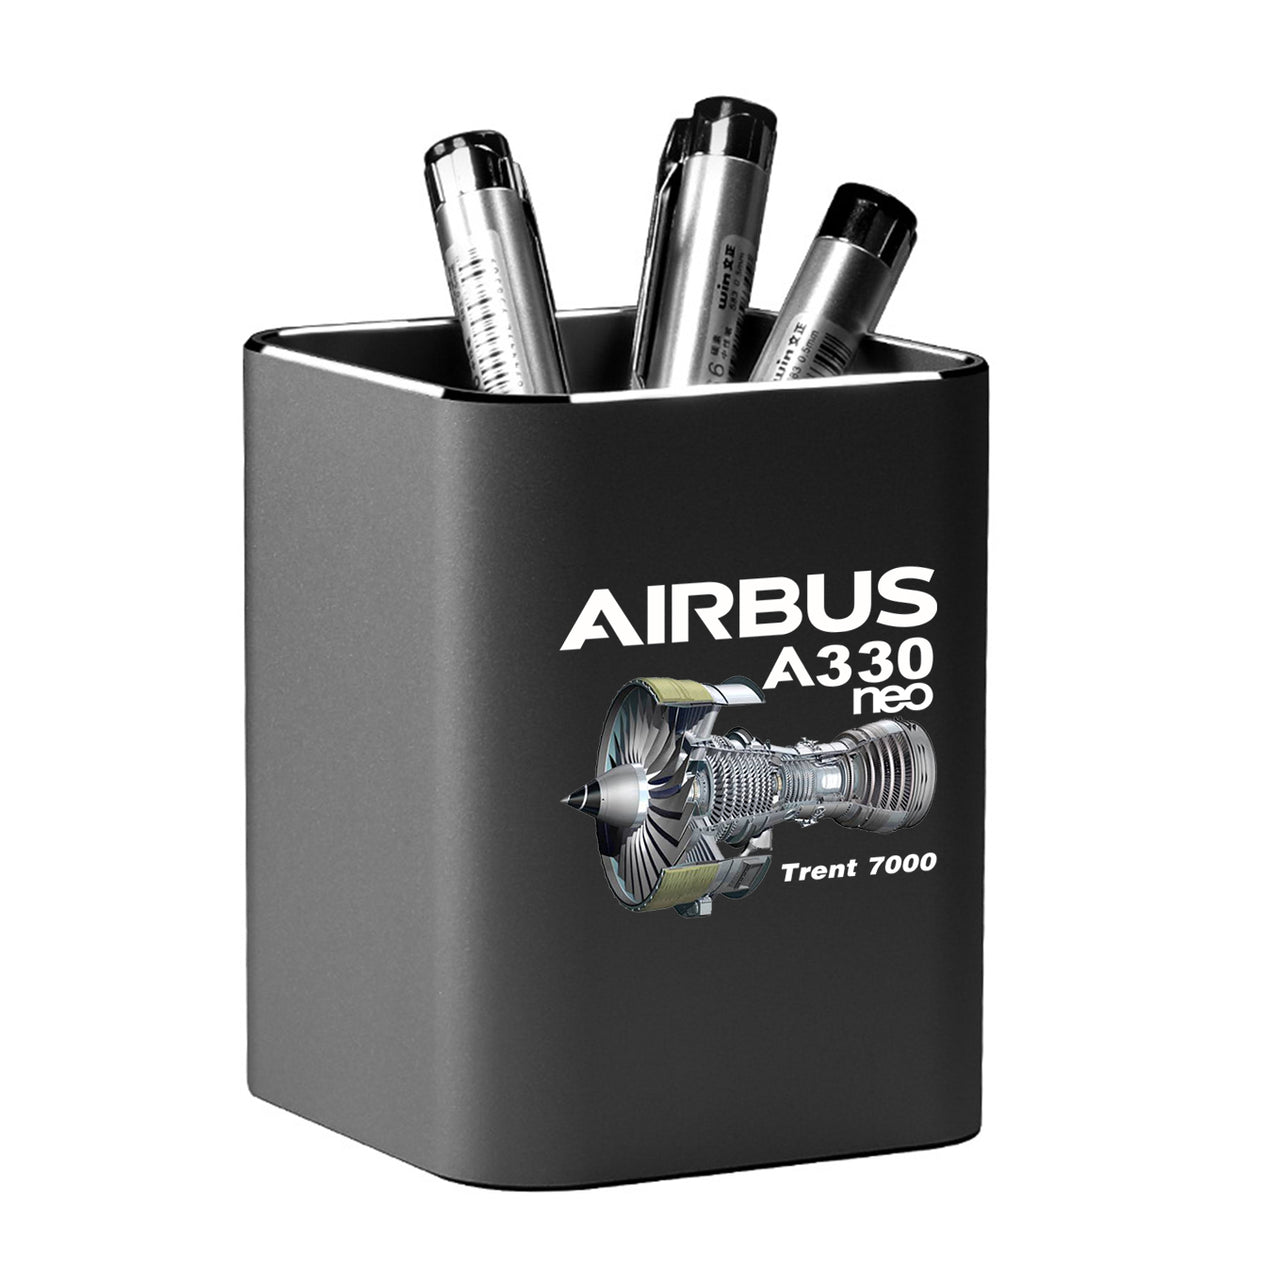 Airbus A330neo & Trent 7000 Designed Aluminium Alloy Pen Holders